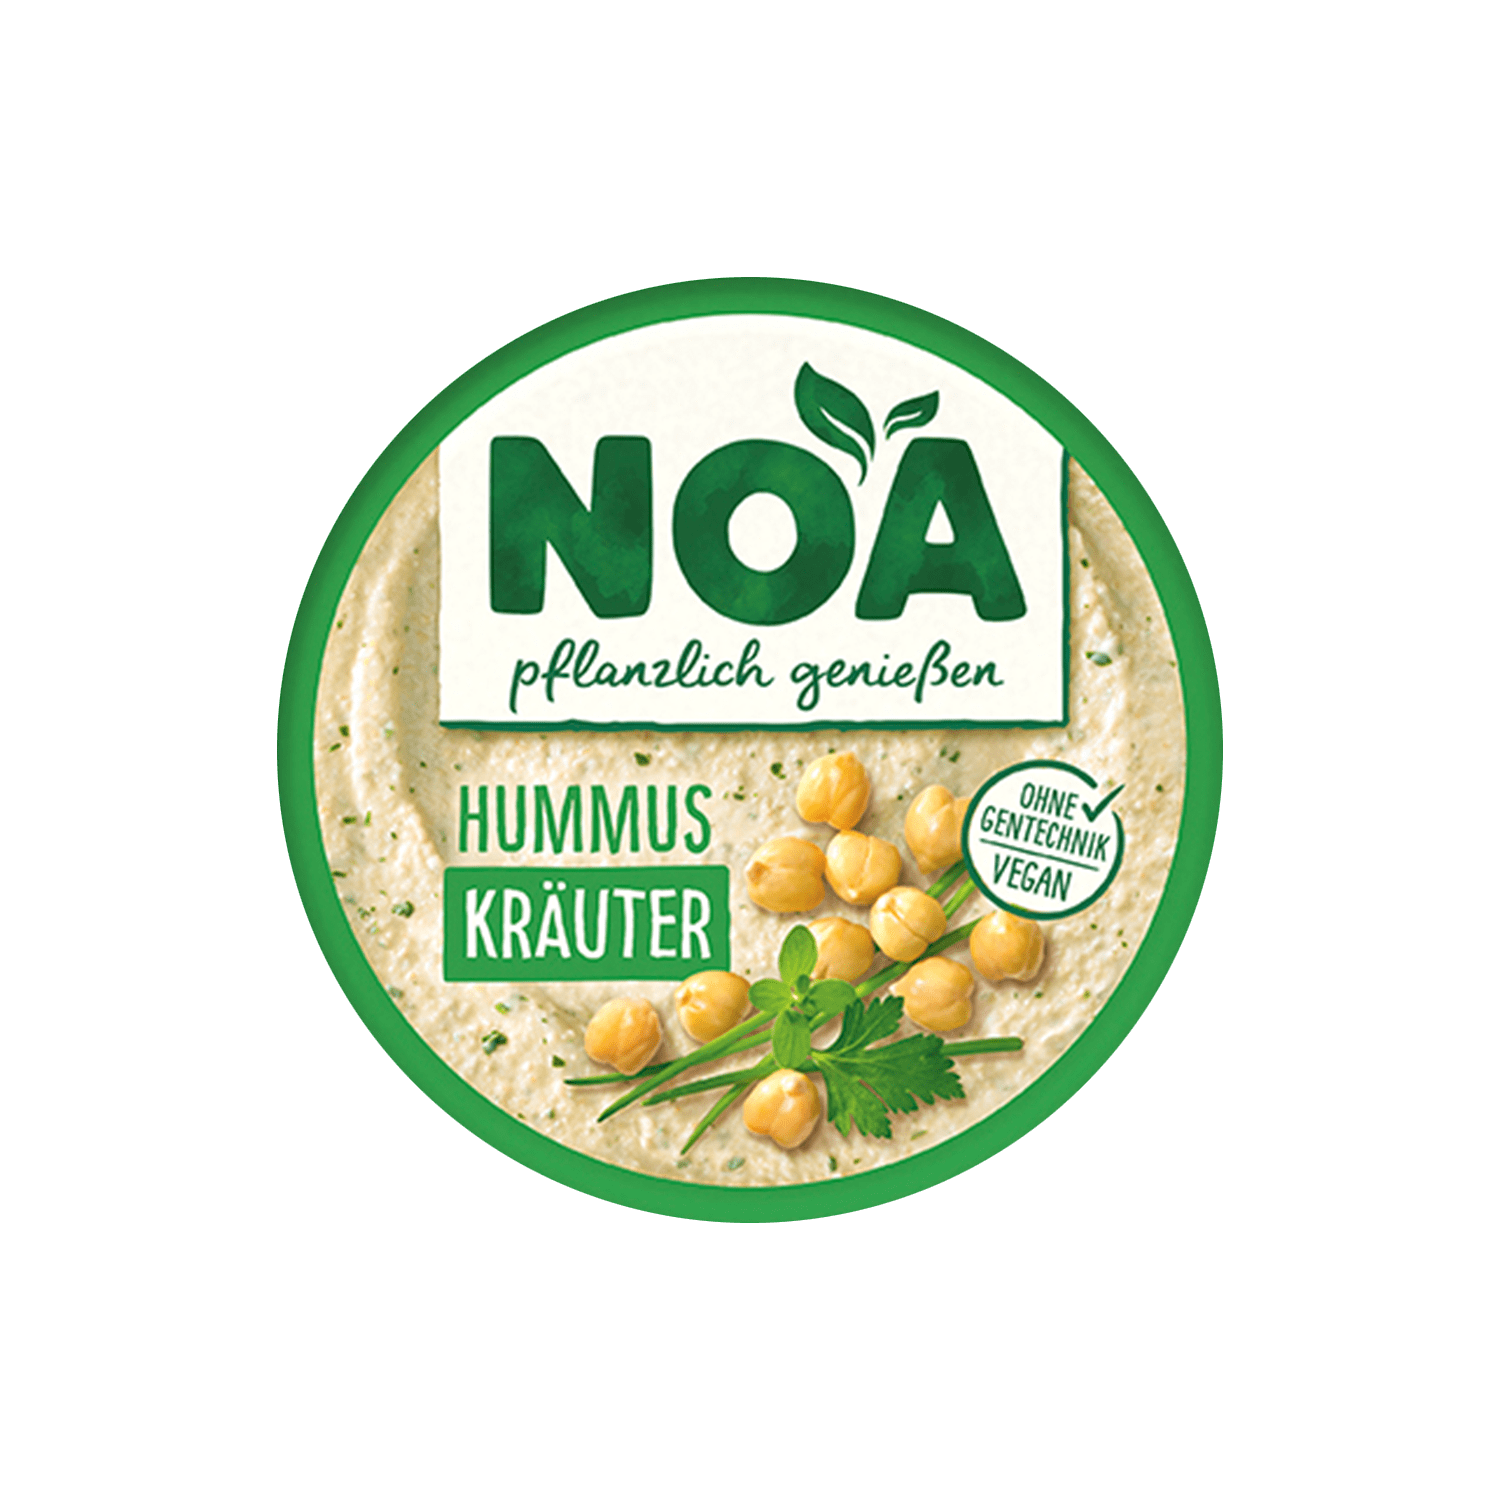 Hummus Kräuter, 175g